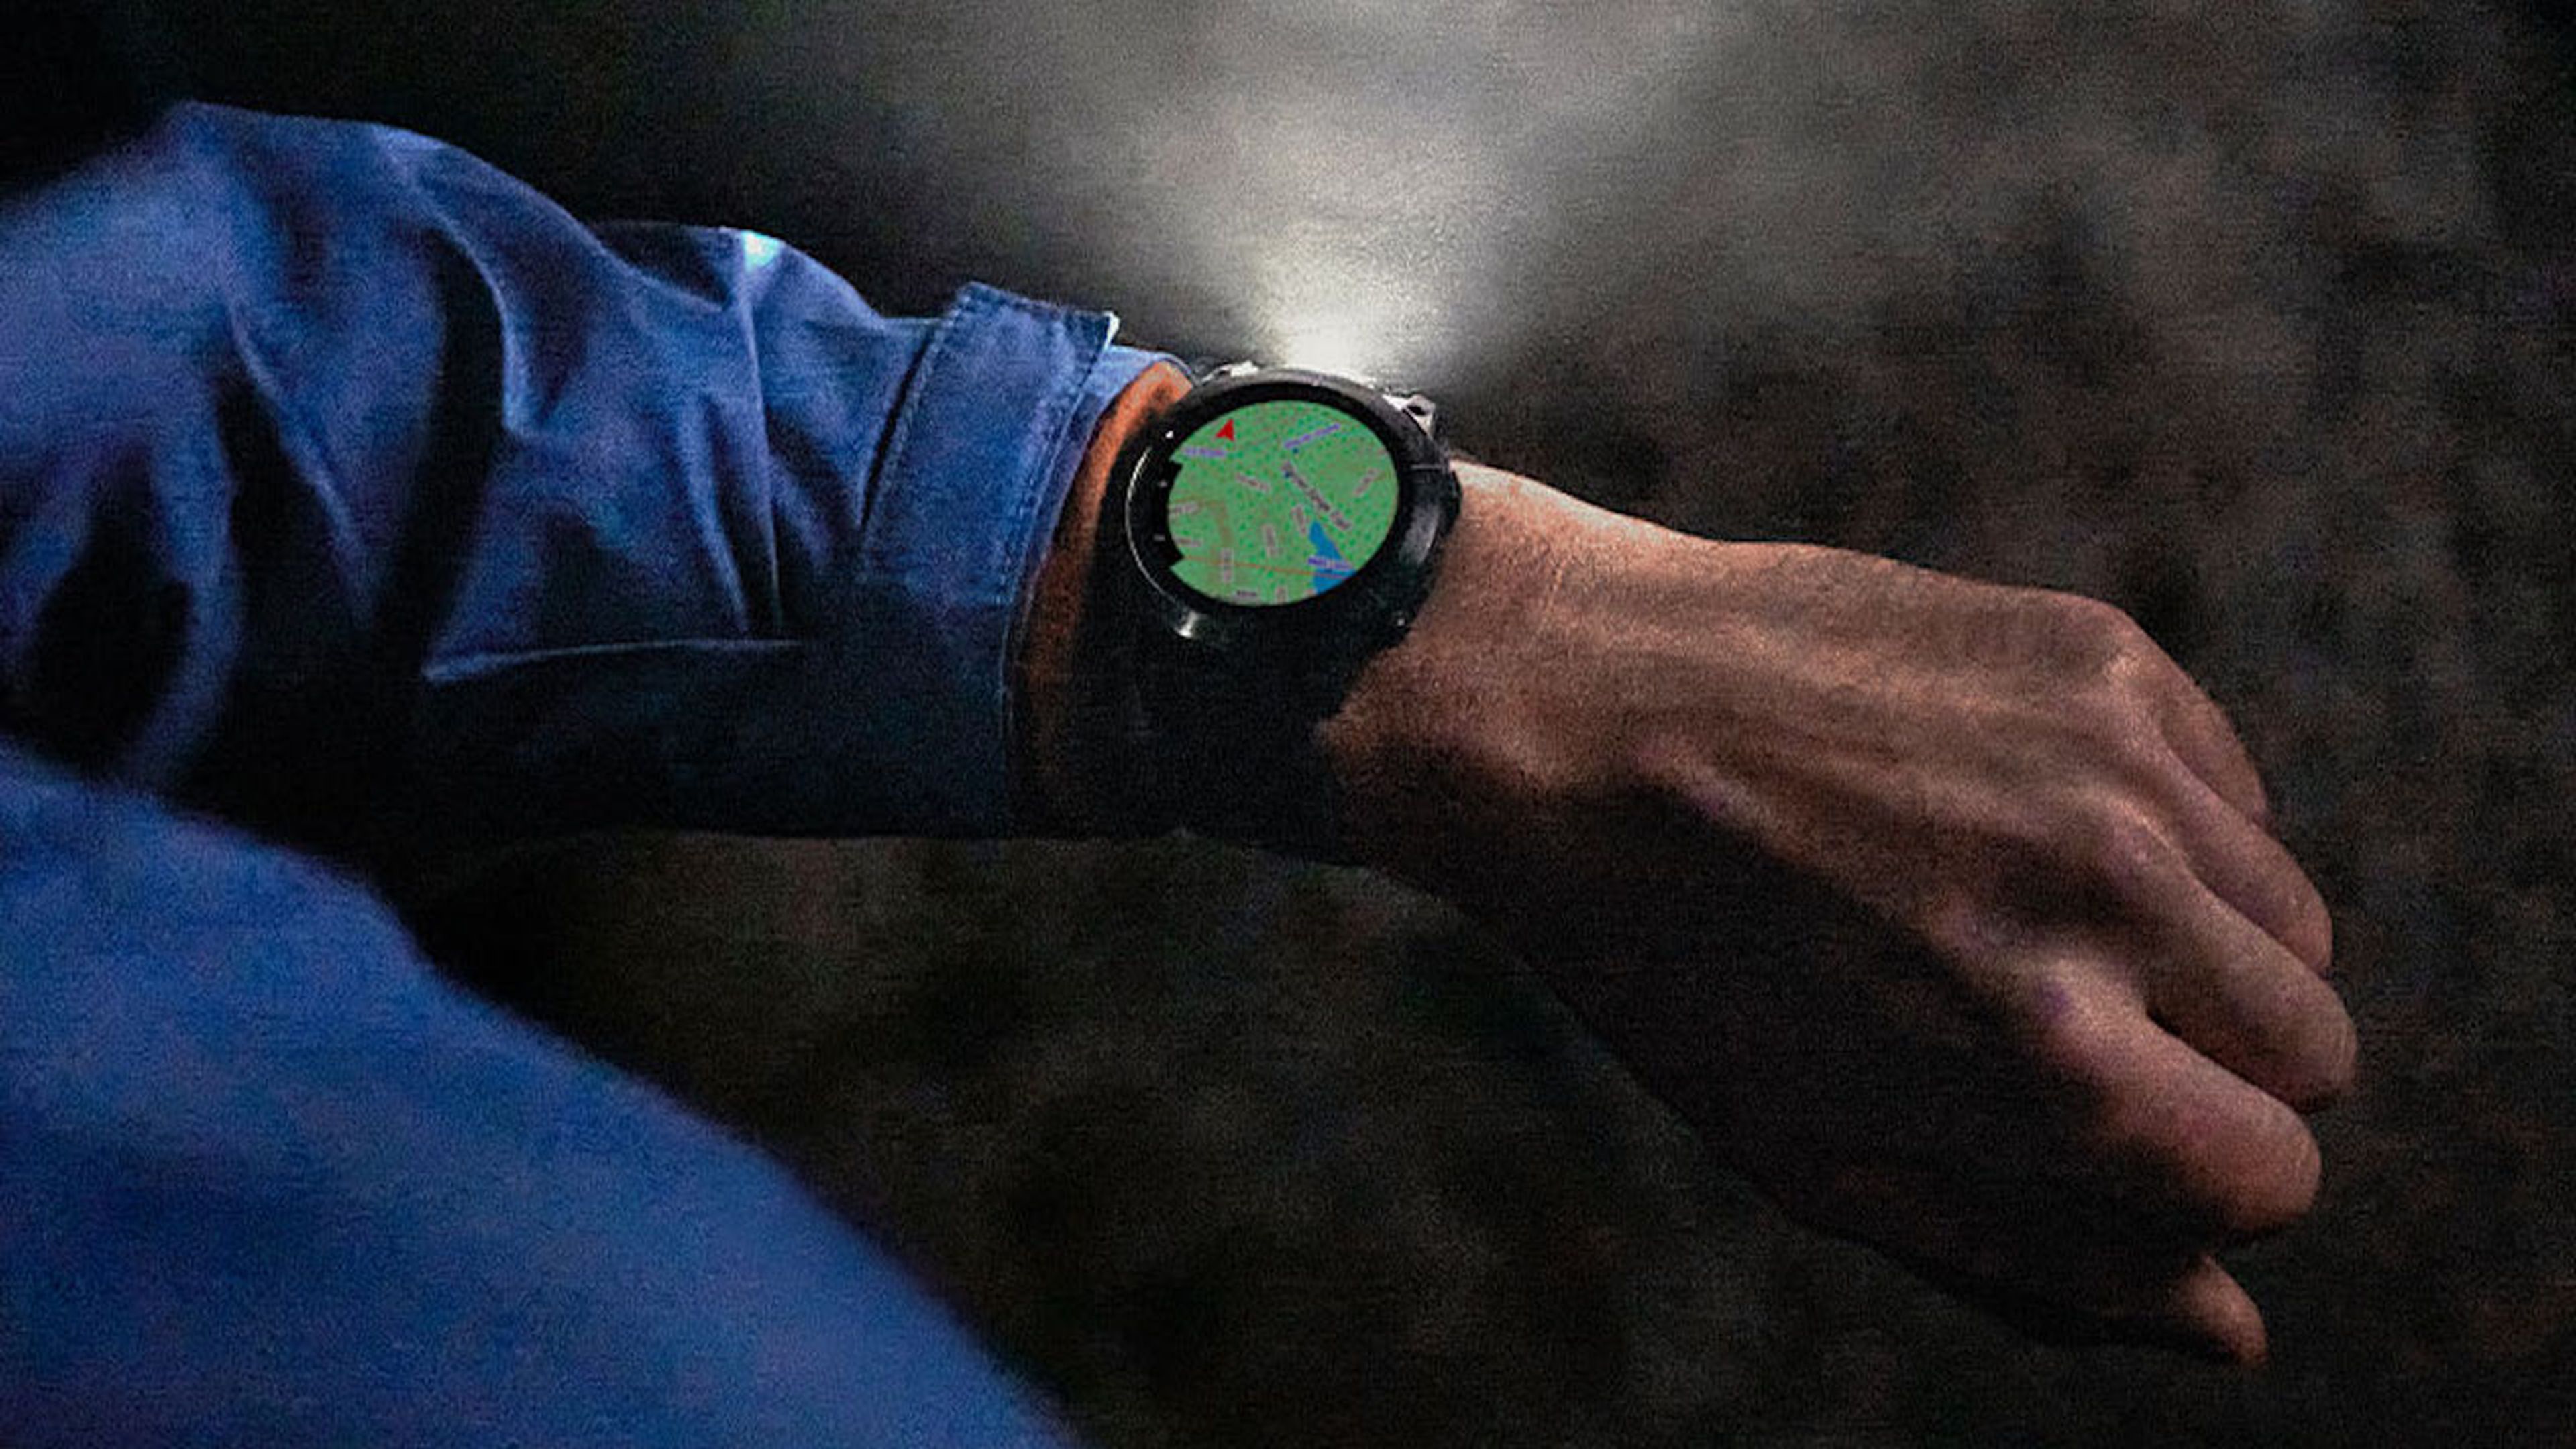 Qué smartwatch Garmin comprar: mejores modelos y precios